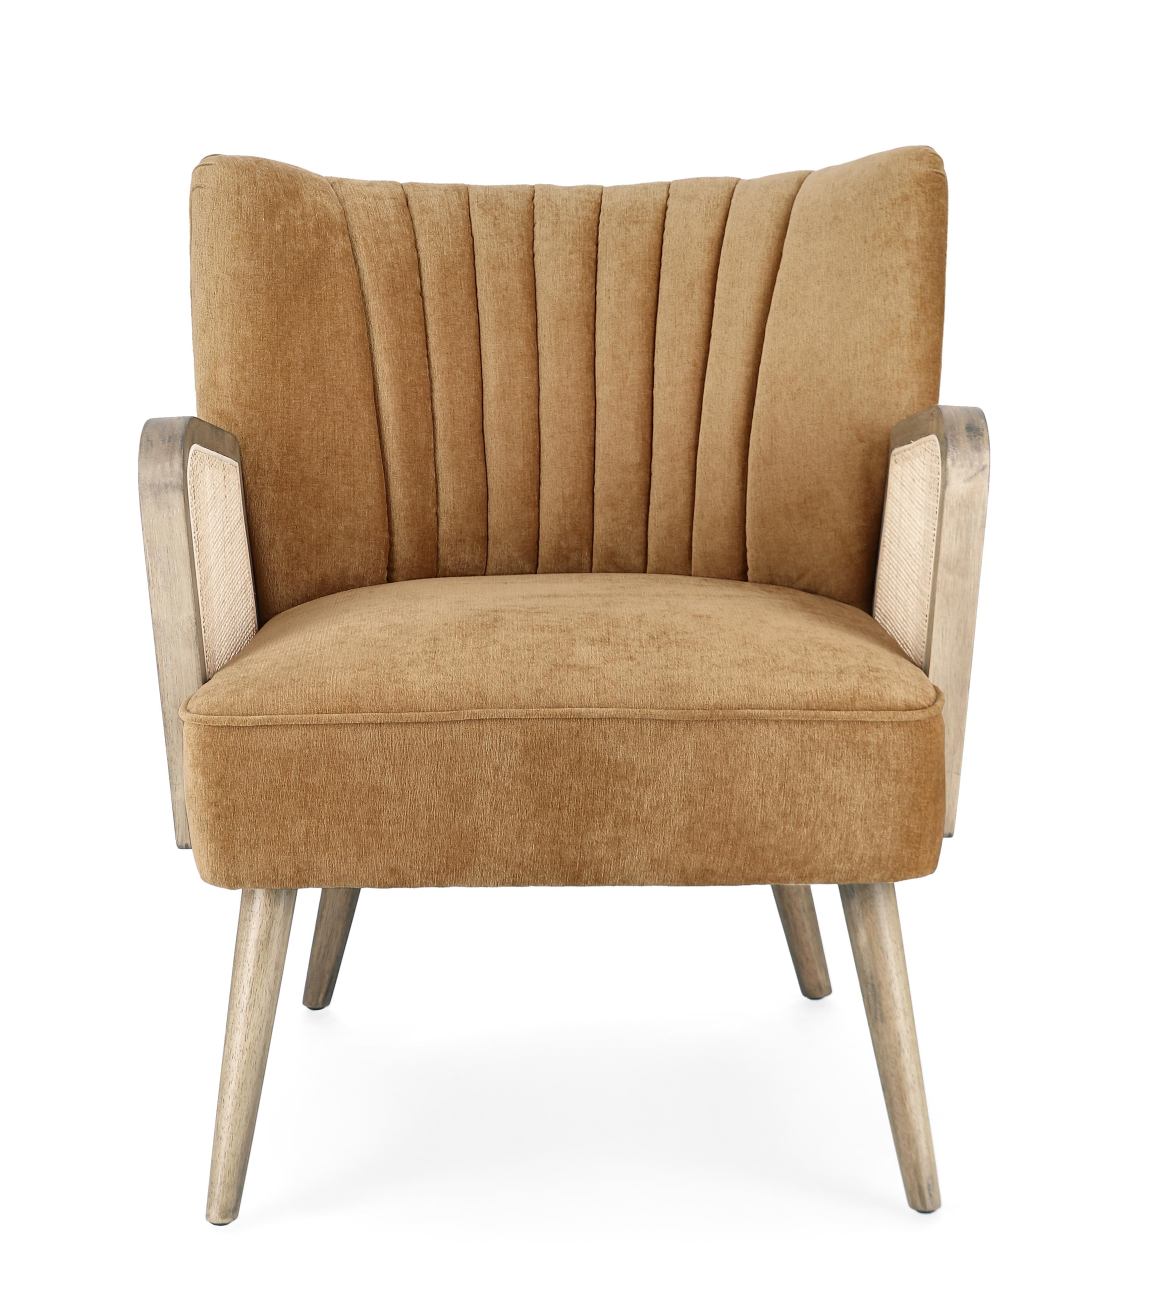 Der Sessel Virna überzeugt mit seinem modernen Stil. Gefertigt wurde er aus einem Stoff-Bezug, welcher einen Senf Farbton besitzt. Das Gestell ist aus Kautschukholz und hat eine braune Farbe. Der Sessel verfügt über eine Armlehne.